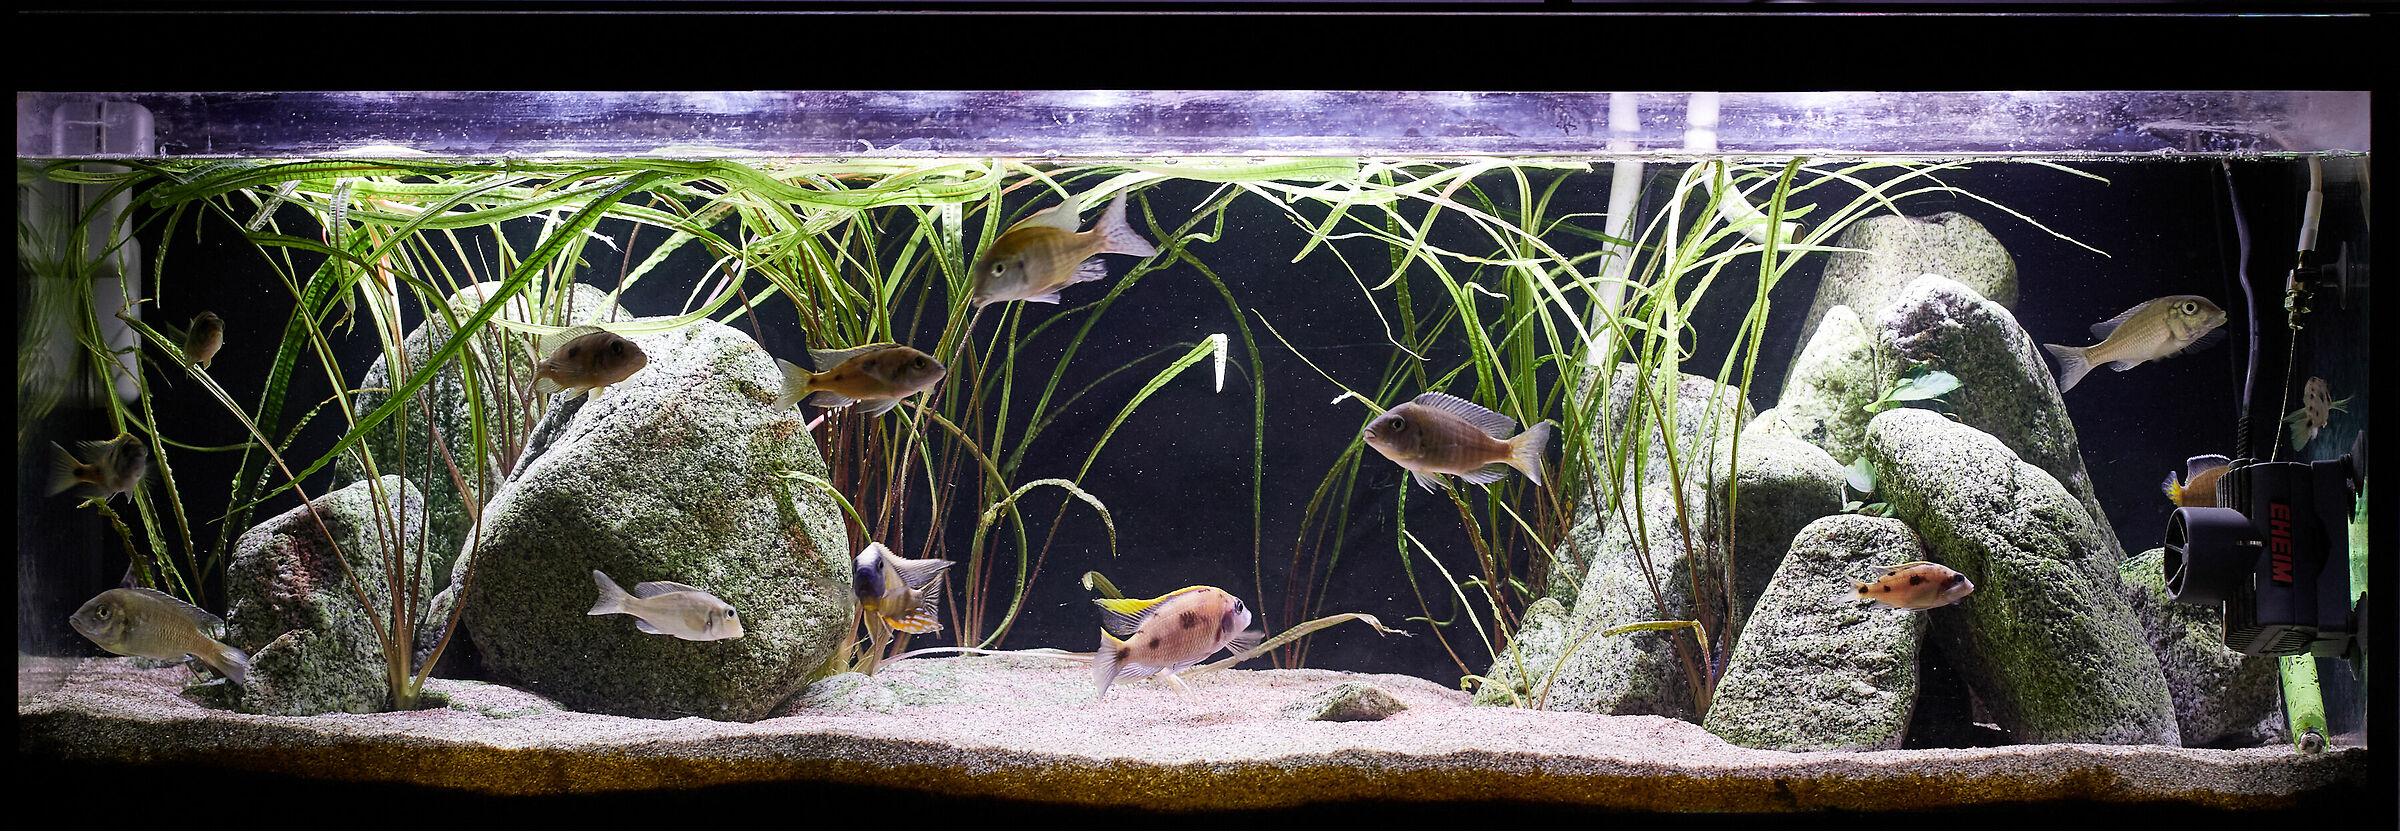 My aquarium...